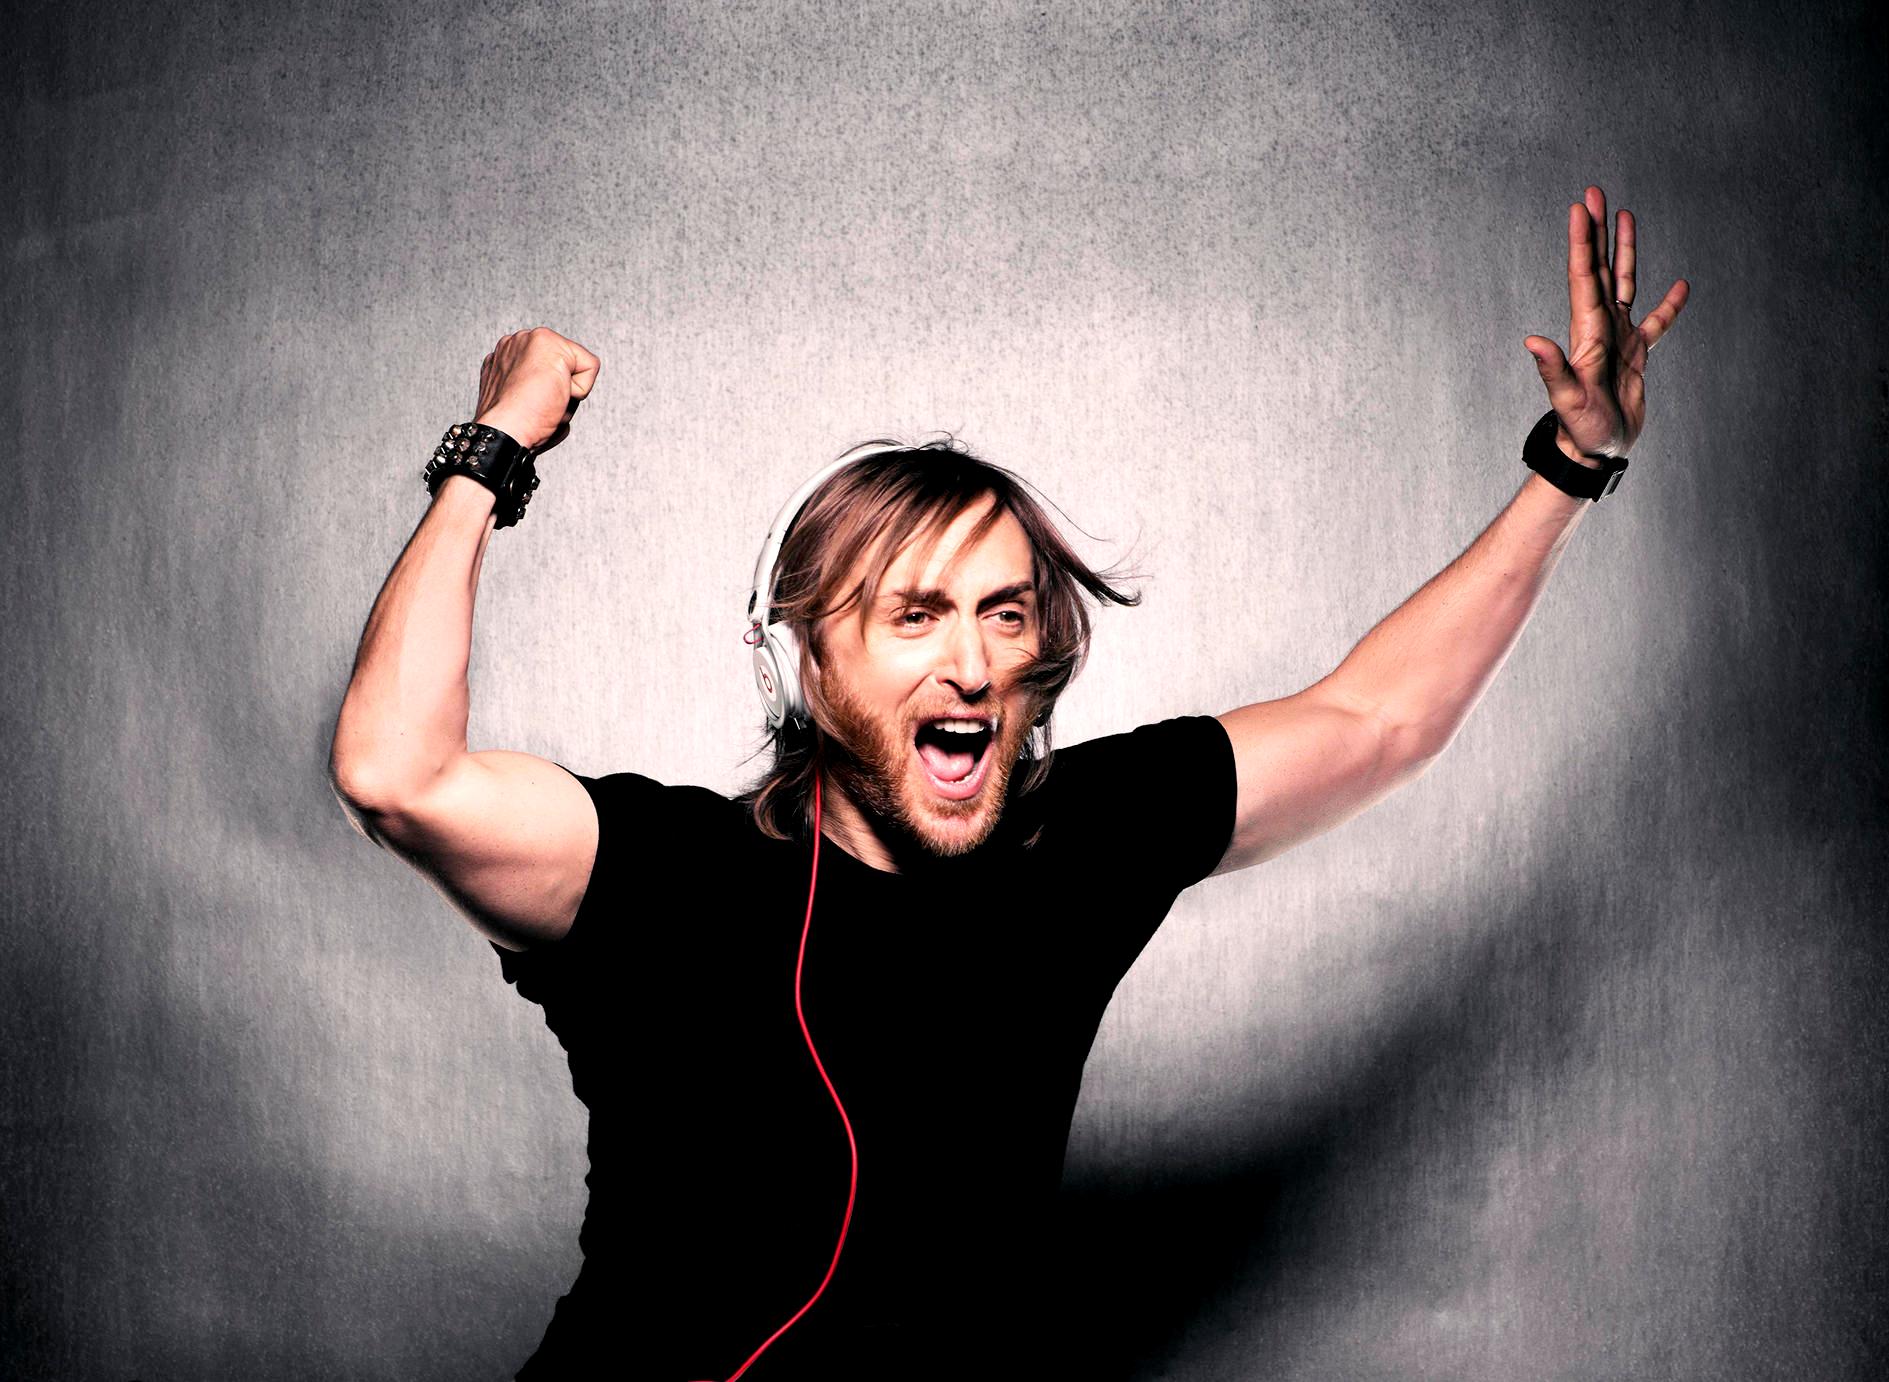 Discoteca prohíbe poner canciones de David Guetta, Tiesto y otros